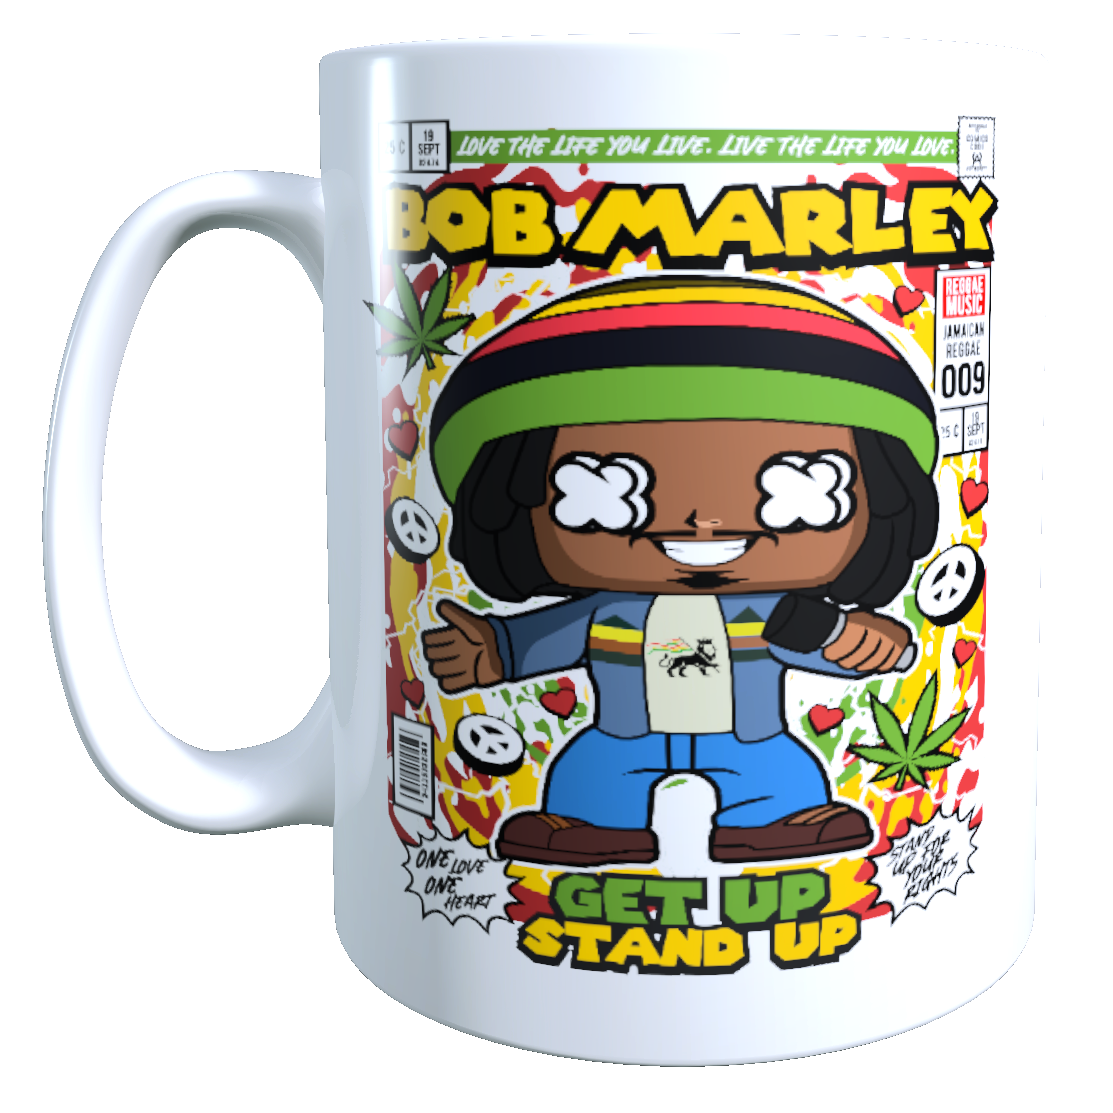 Taza  - Tazón Bob Marley